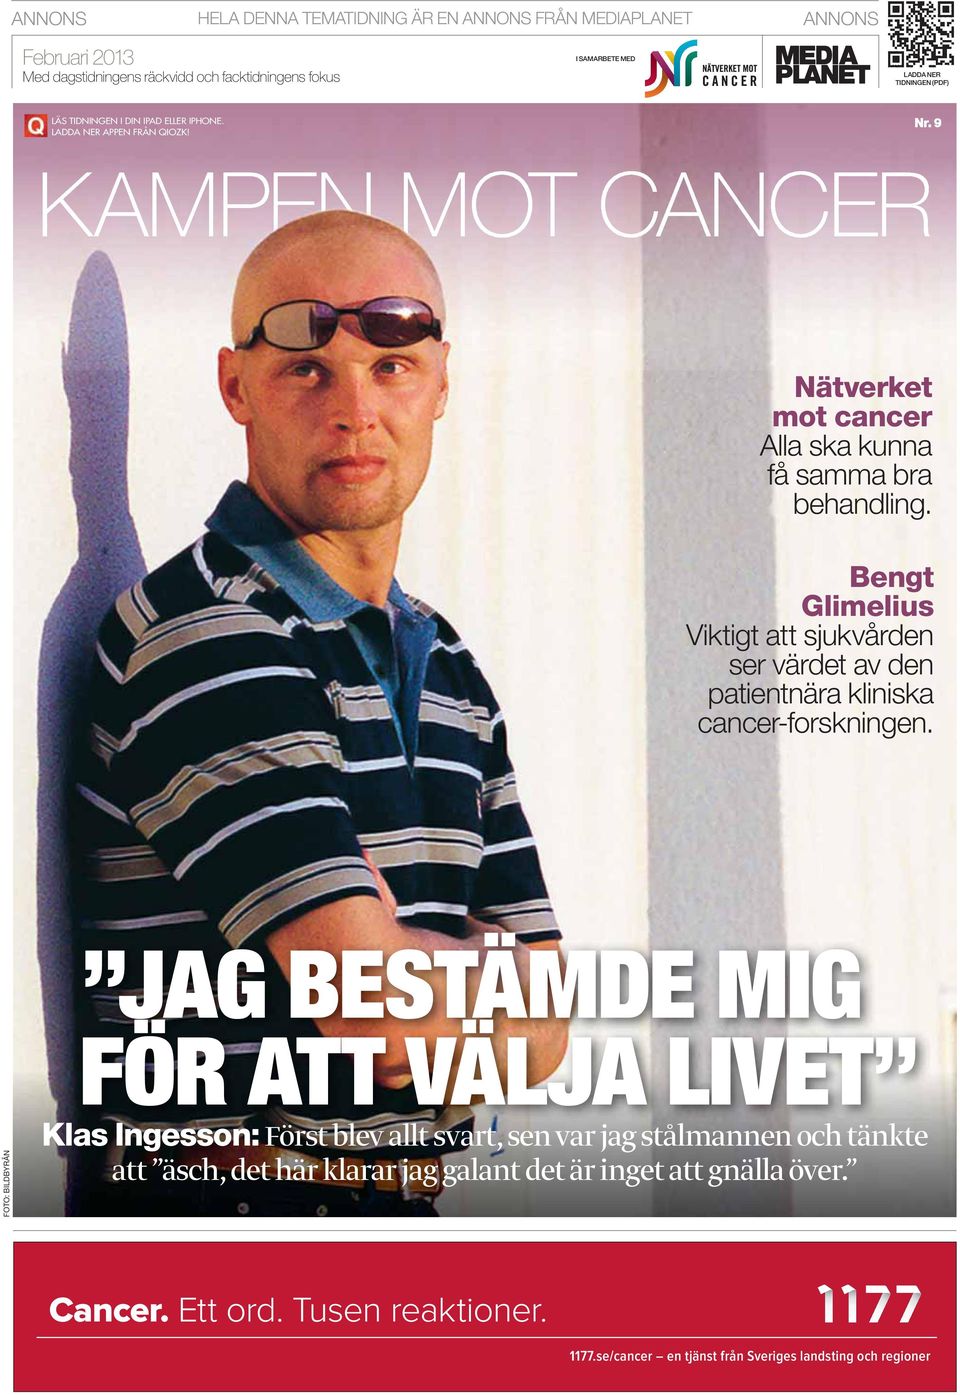 Bengt Glimelius Viktigt att sjukvården ser värdet av den patientnära kliniska cancer-forskningen.